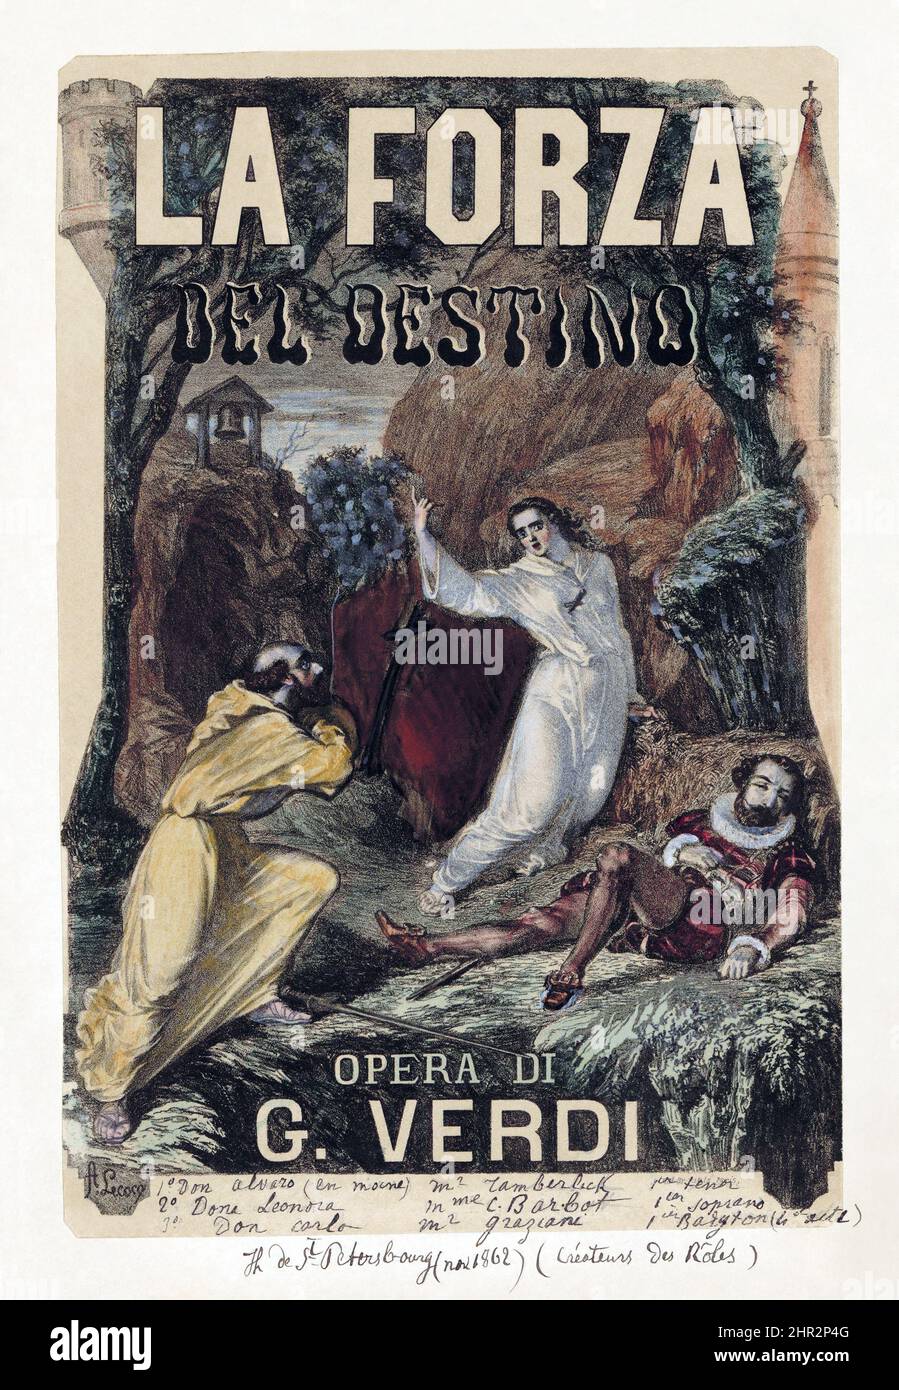 Alexandre Charles Lecocq - Giuseppe Verdi - la forza del destino - affiche publicitaire vintage. 1862-1880. Banque D'Images